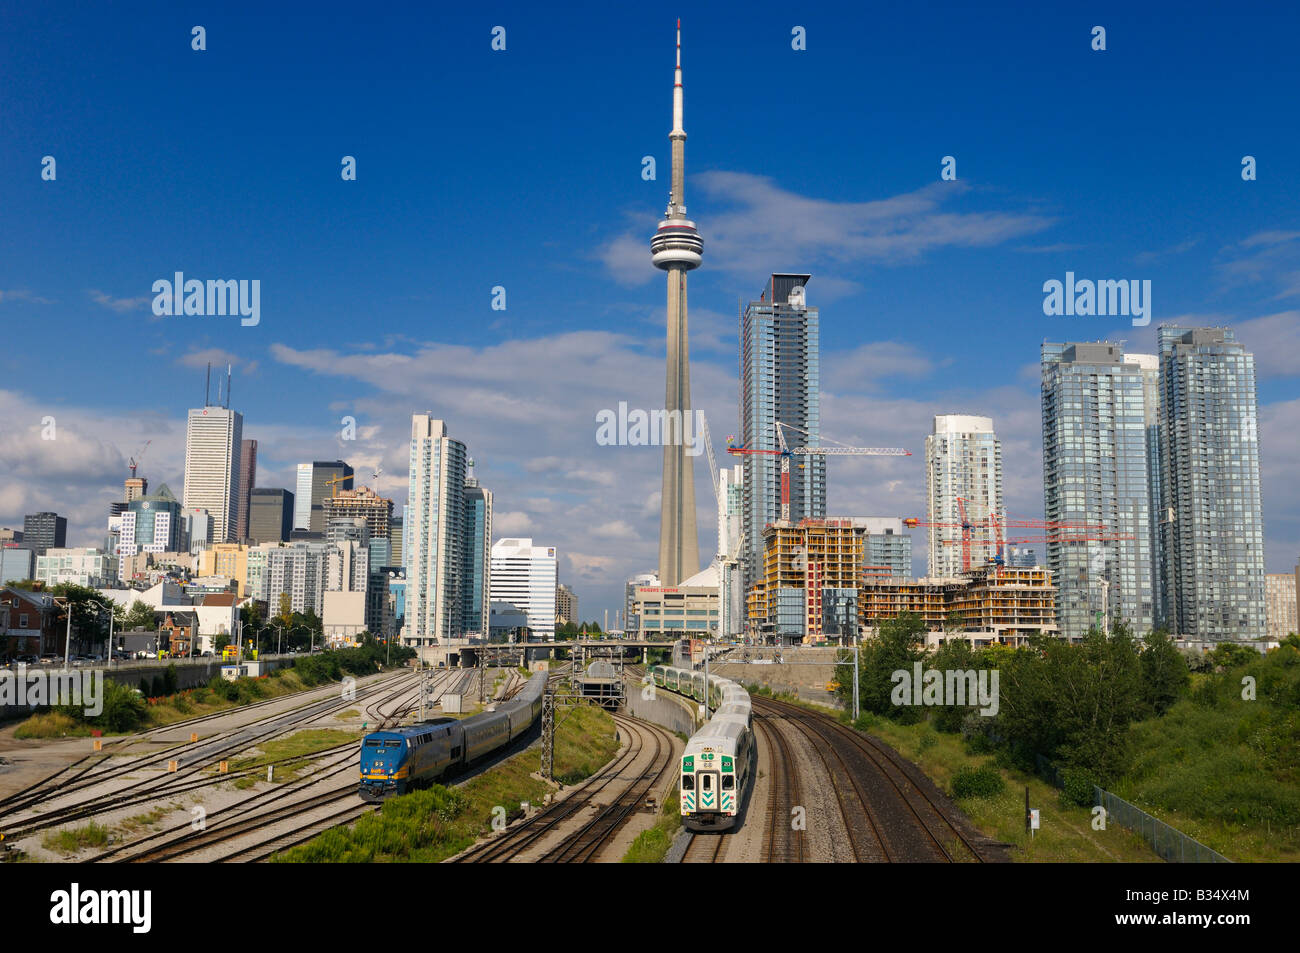 Rendez-vous sur et via trains quittant le centre-ville de Toronto Union Station après le travail avec des tours d'habitation et de la Tour CN Banque D'Images